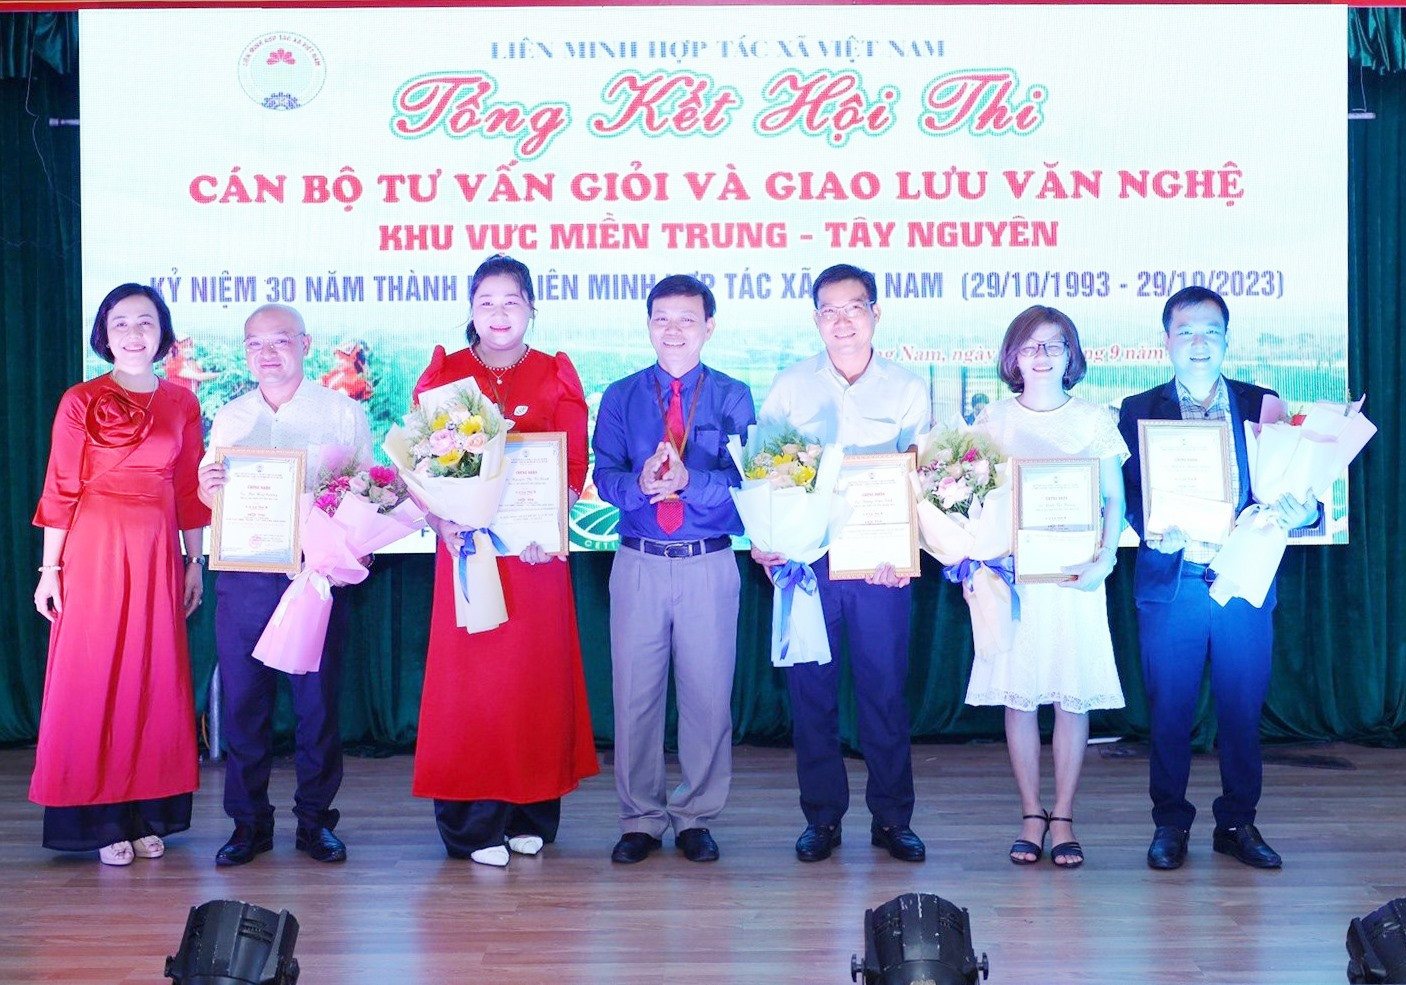 Thí sinh Đặng Văn Tính của Liên minh HTX Quảng Nam (thứ ba từ phải sang) được trao giải Nhì tại hội thi. Ảnh: VINH ANH